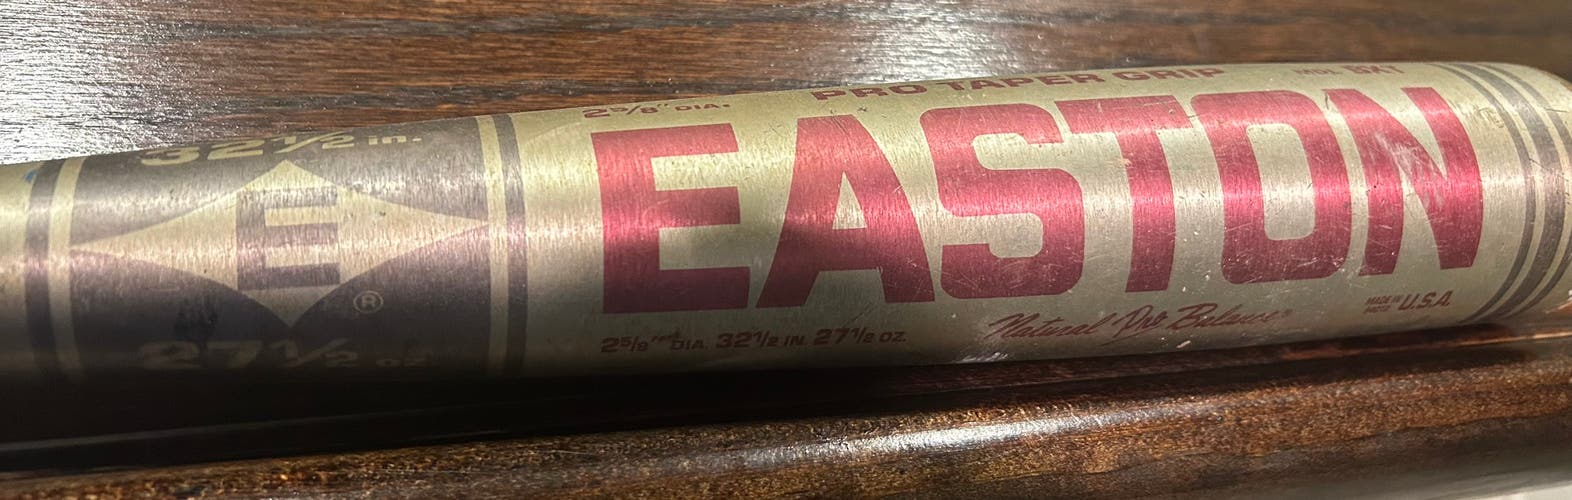 Easton Baseball Bat